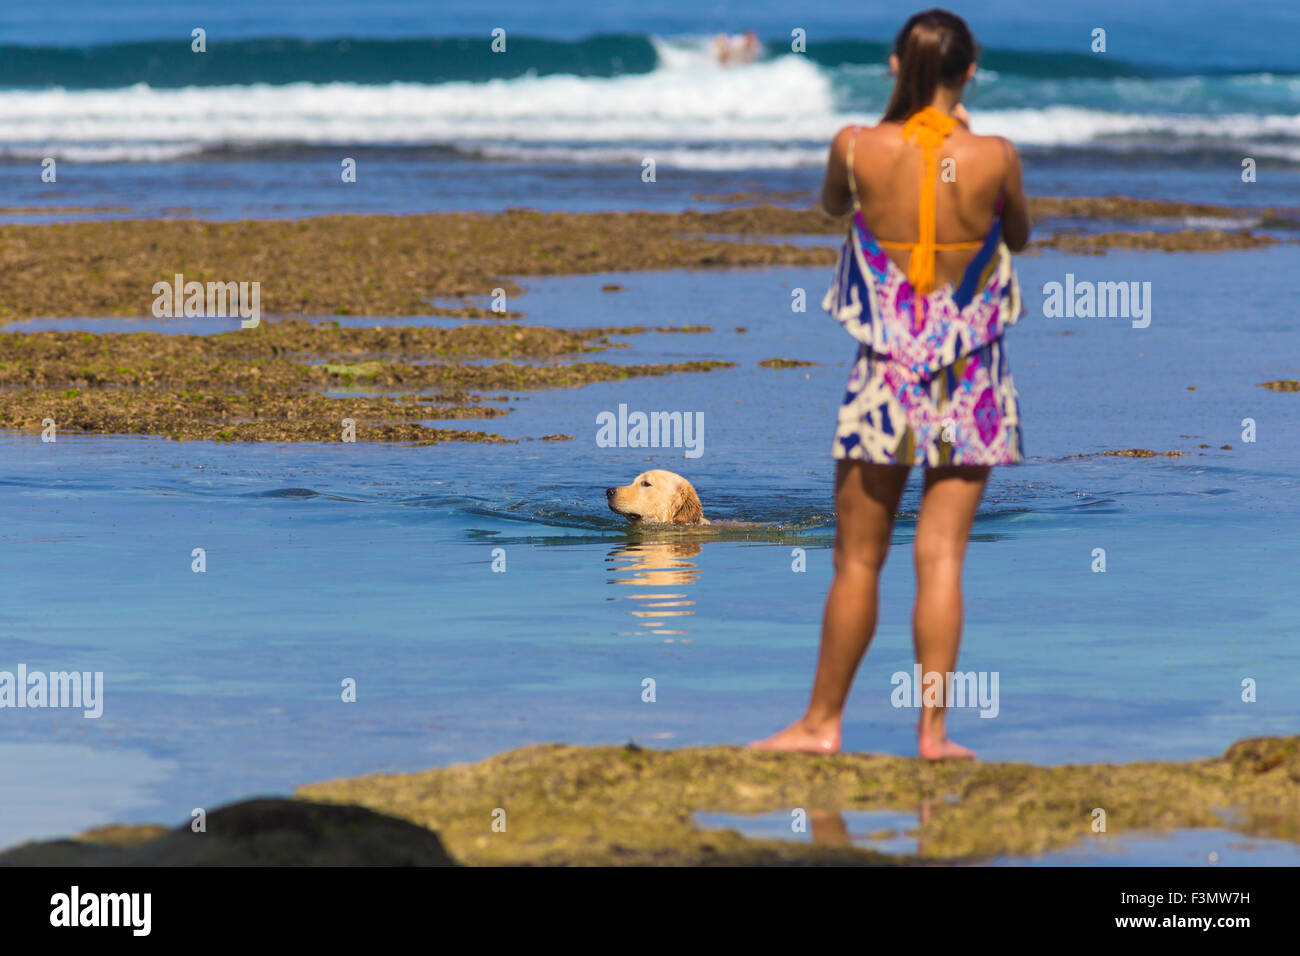 Femme debout sur la plage tandis que chien nage.L'île de Bali.L'Indonésie. Banque D'Images